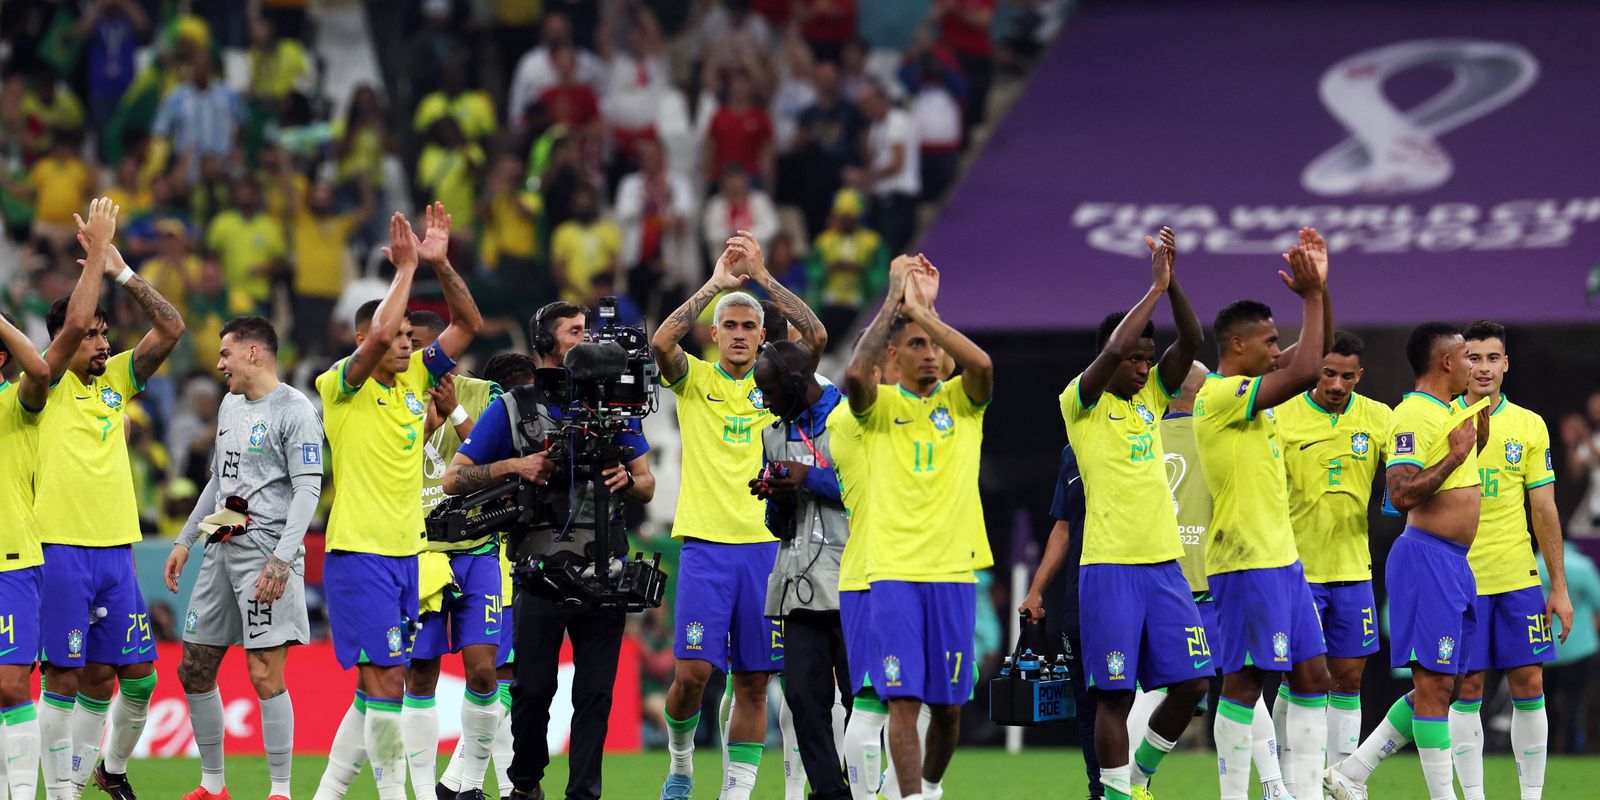 Brasil x Sérvia: seleção brasileira estreia na Copa do Mundo 2022